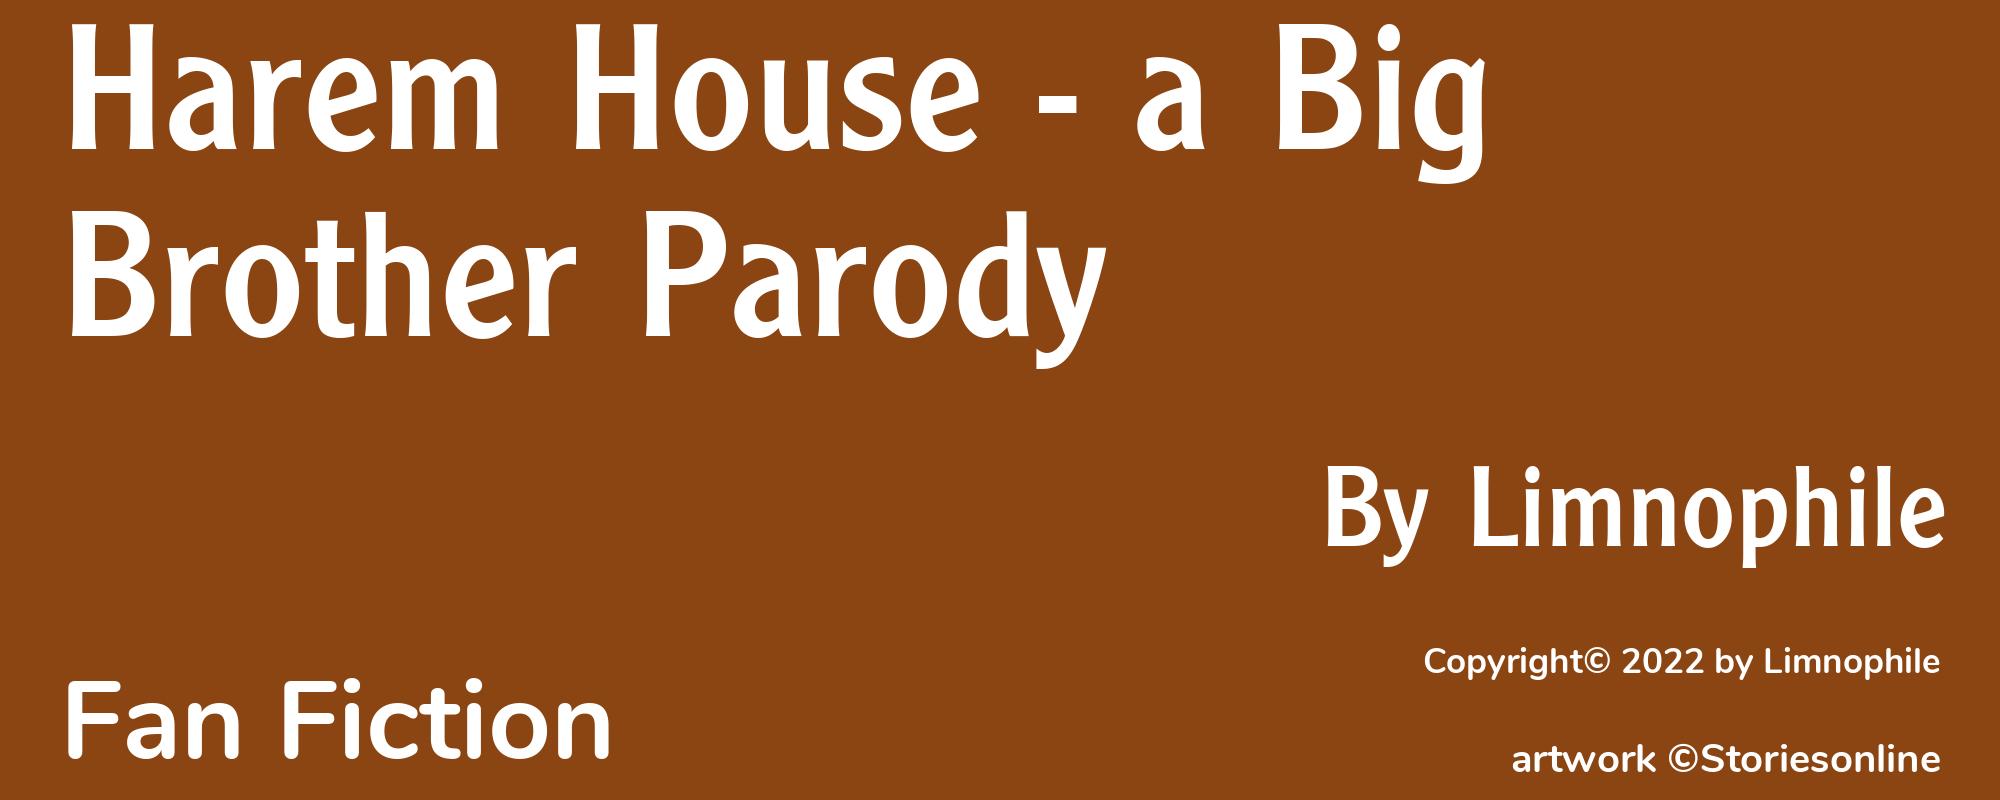 Harem House - a Big Brother Parody - Cover